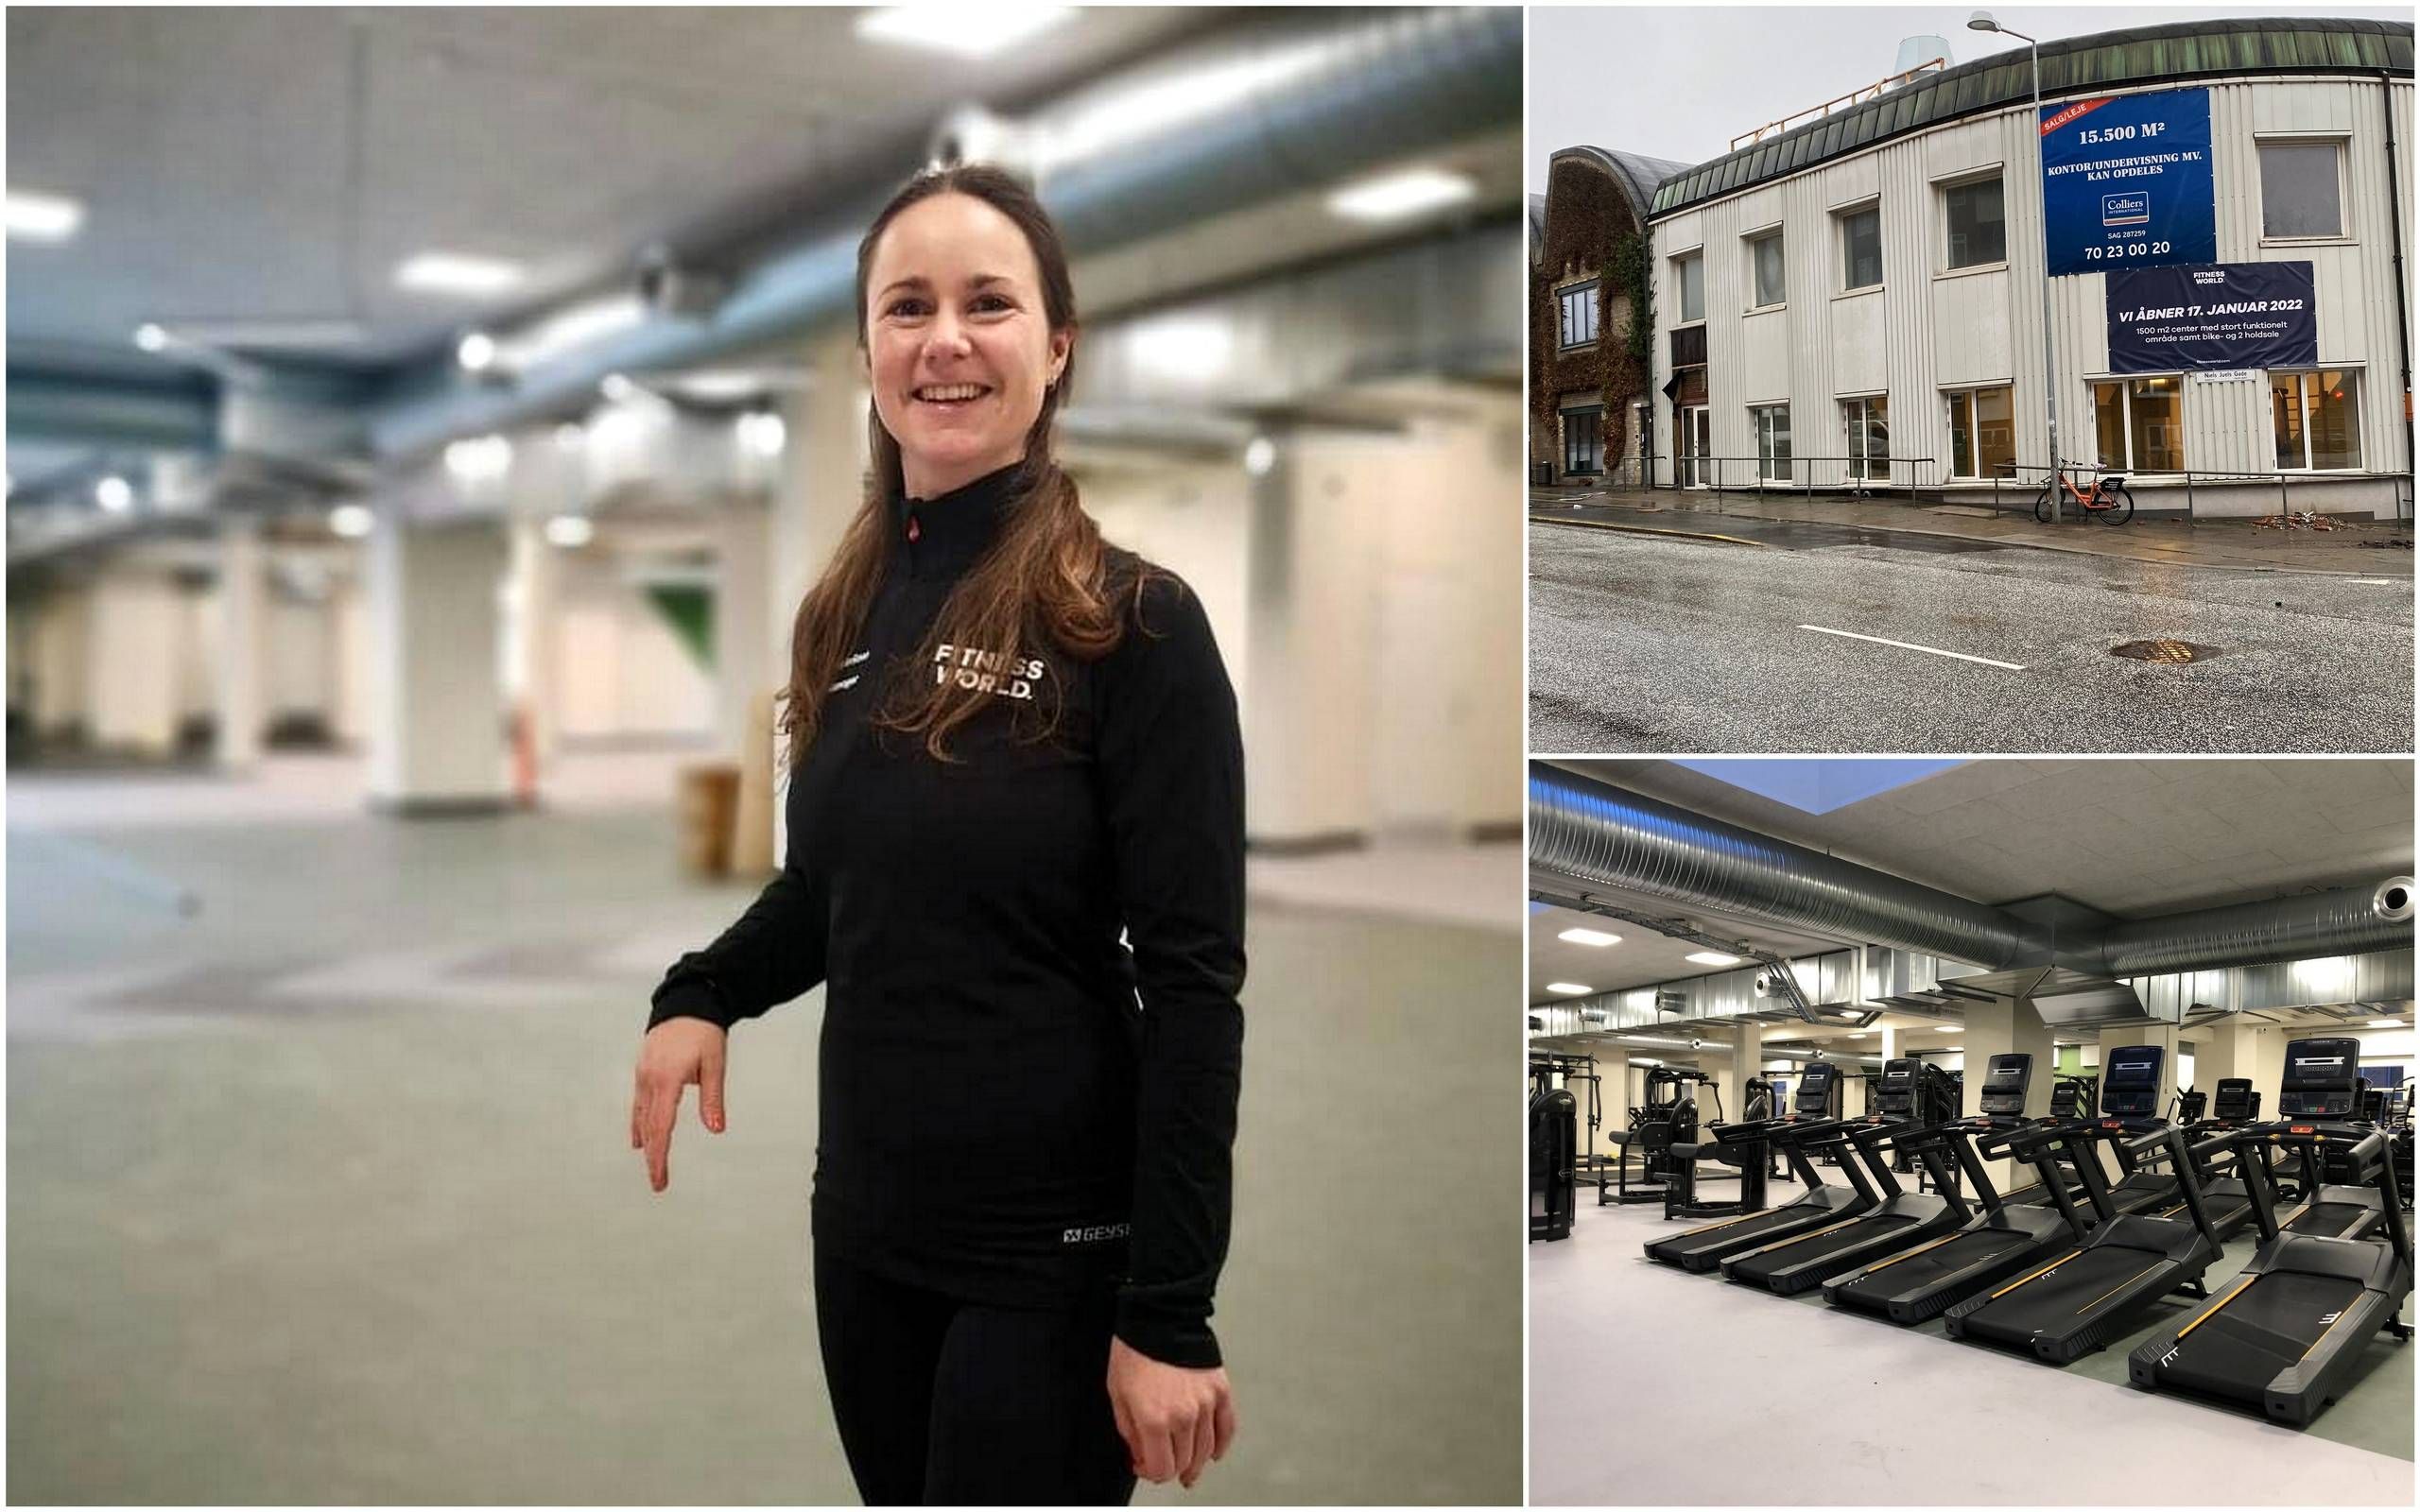 enestående vokal af Fitness World rykker ind i gamle universitetsbygninger på Trøjborg